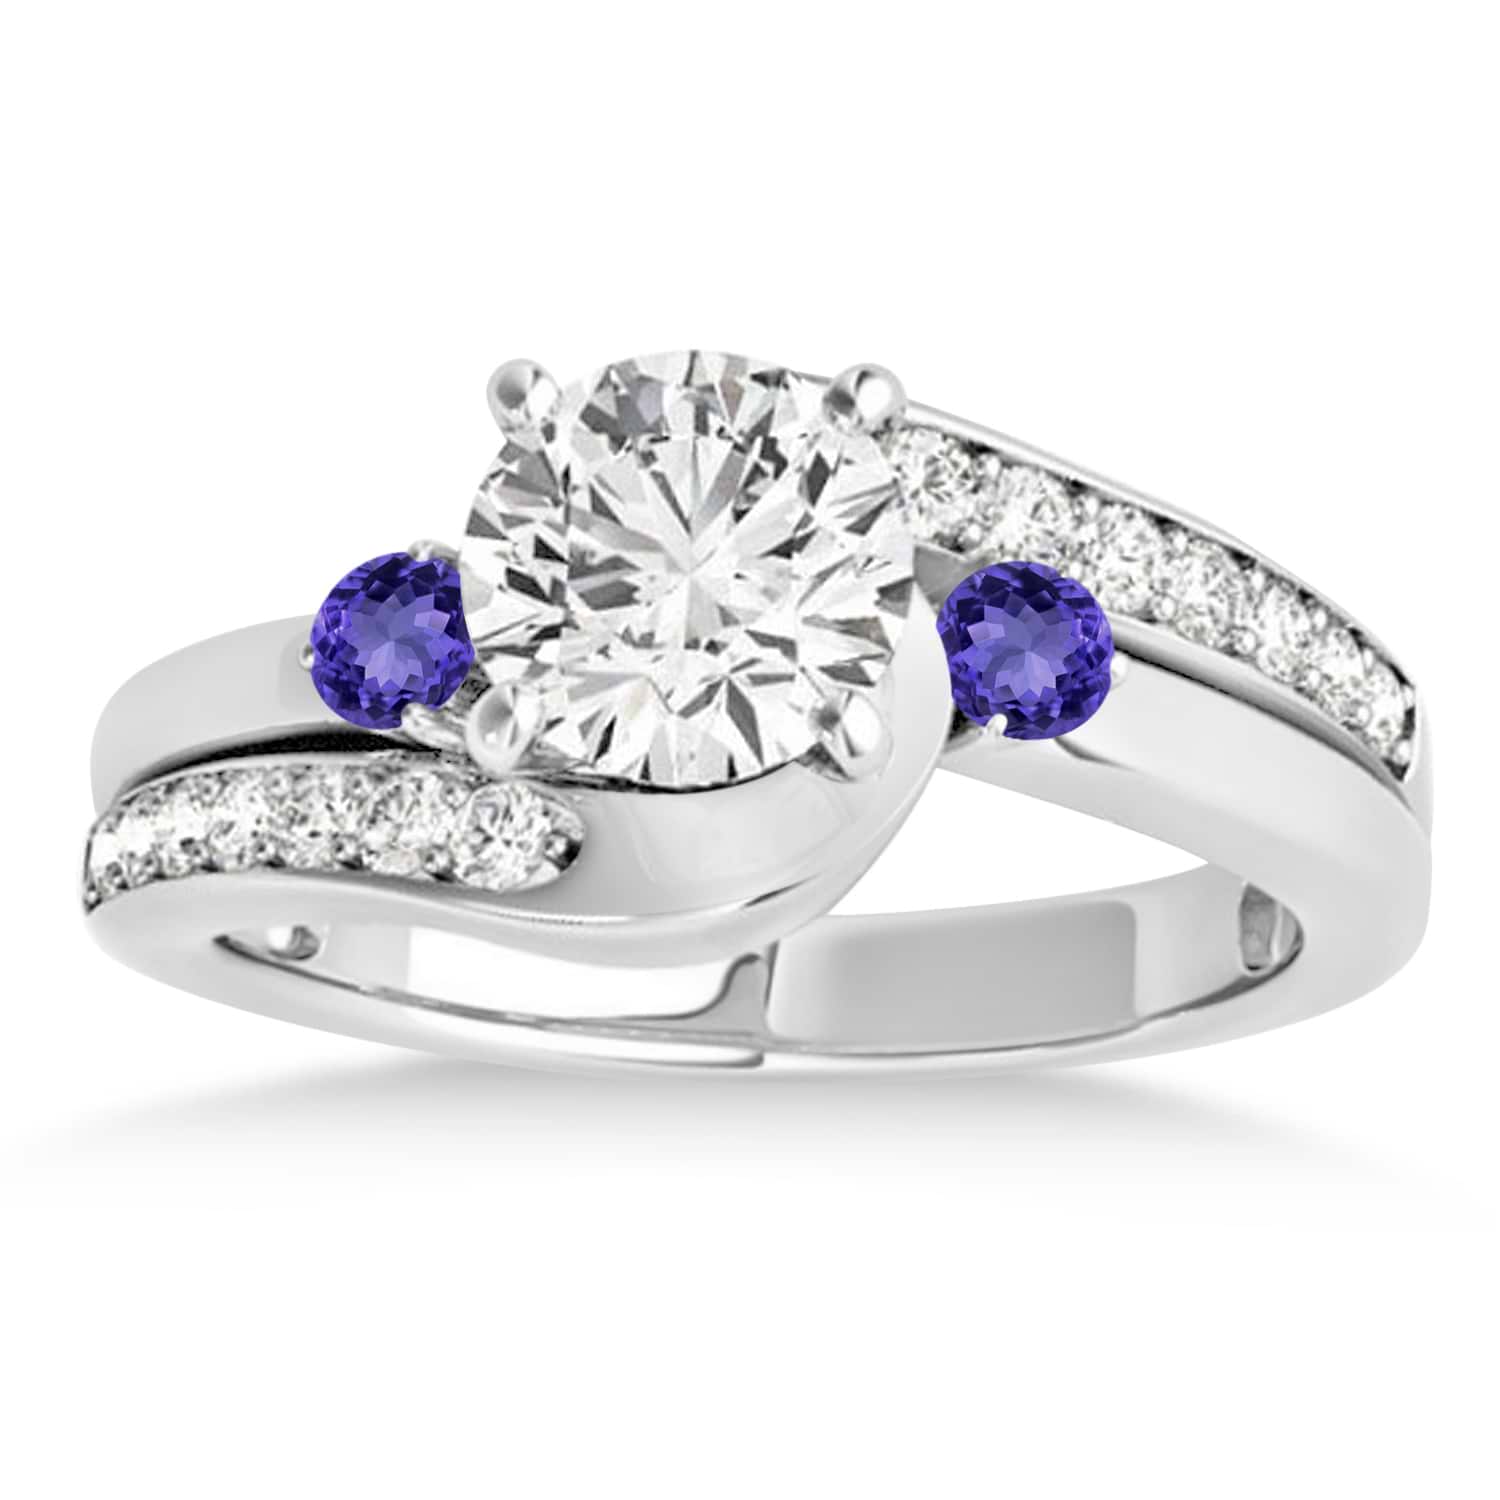 Swirl Design Tanzanite & Diamond Engagement Ring Setting 18k White Gold 0.38ct